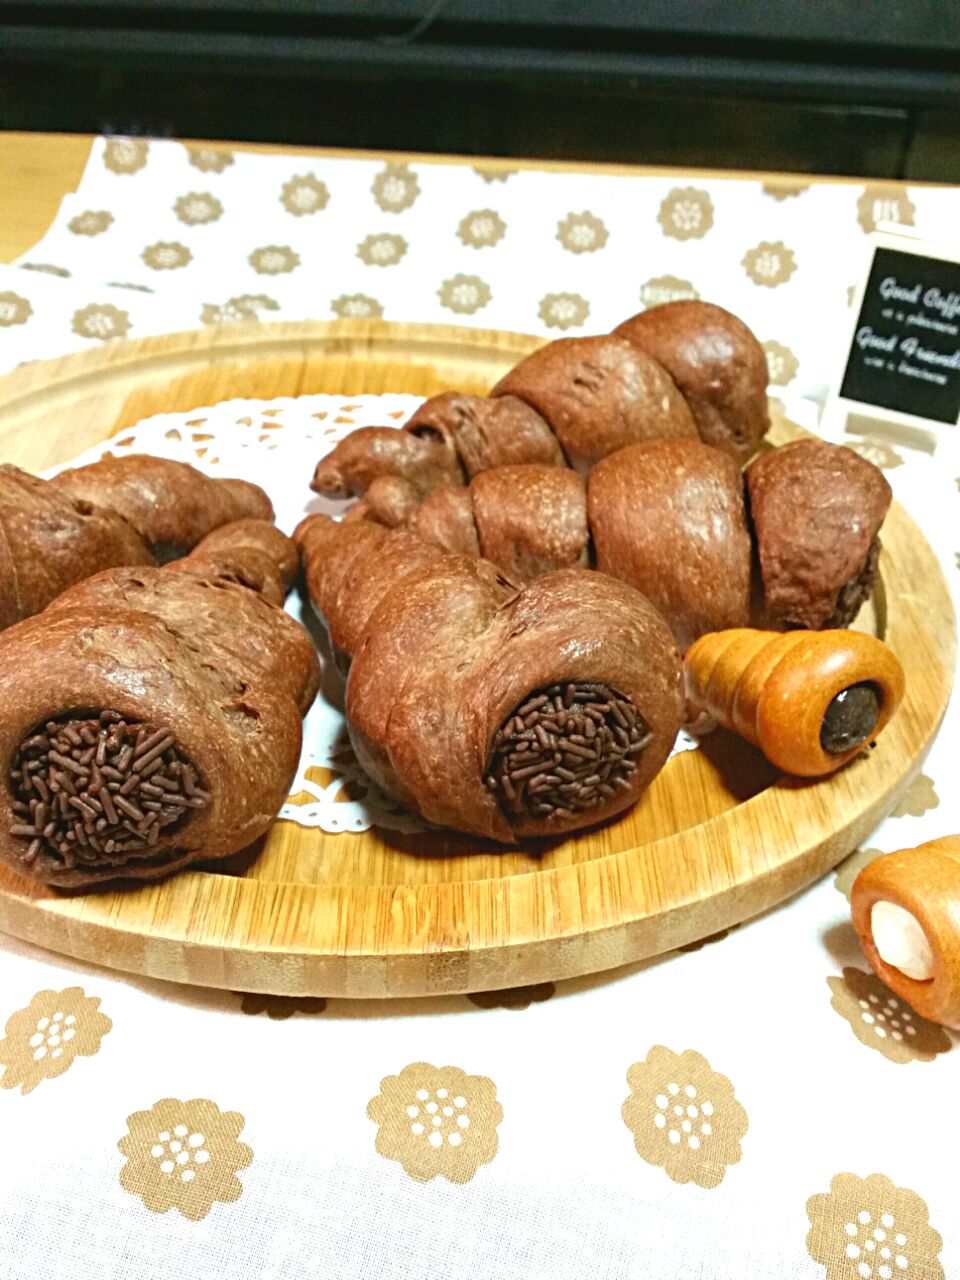 【リクエストパン第1段】ダブルチョココロネ